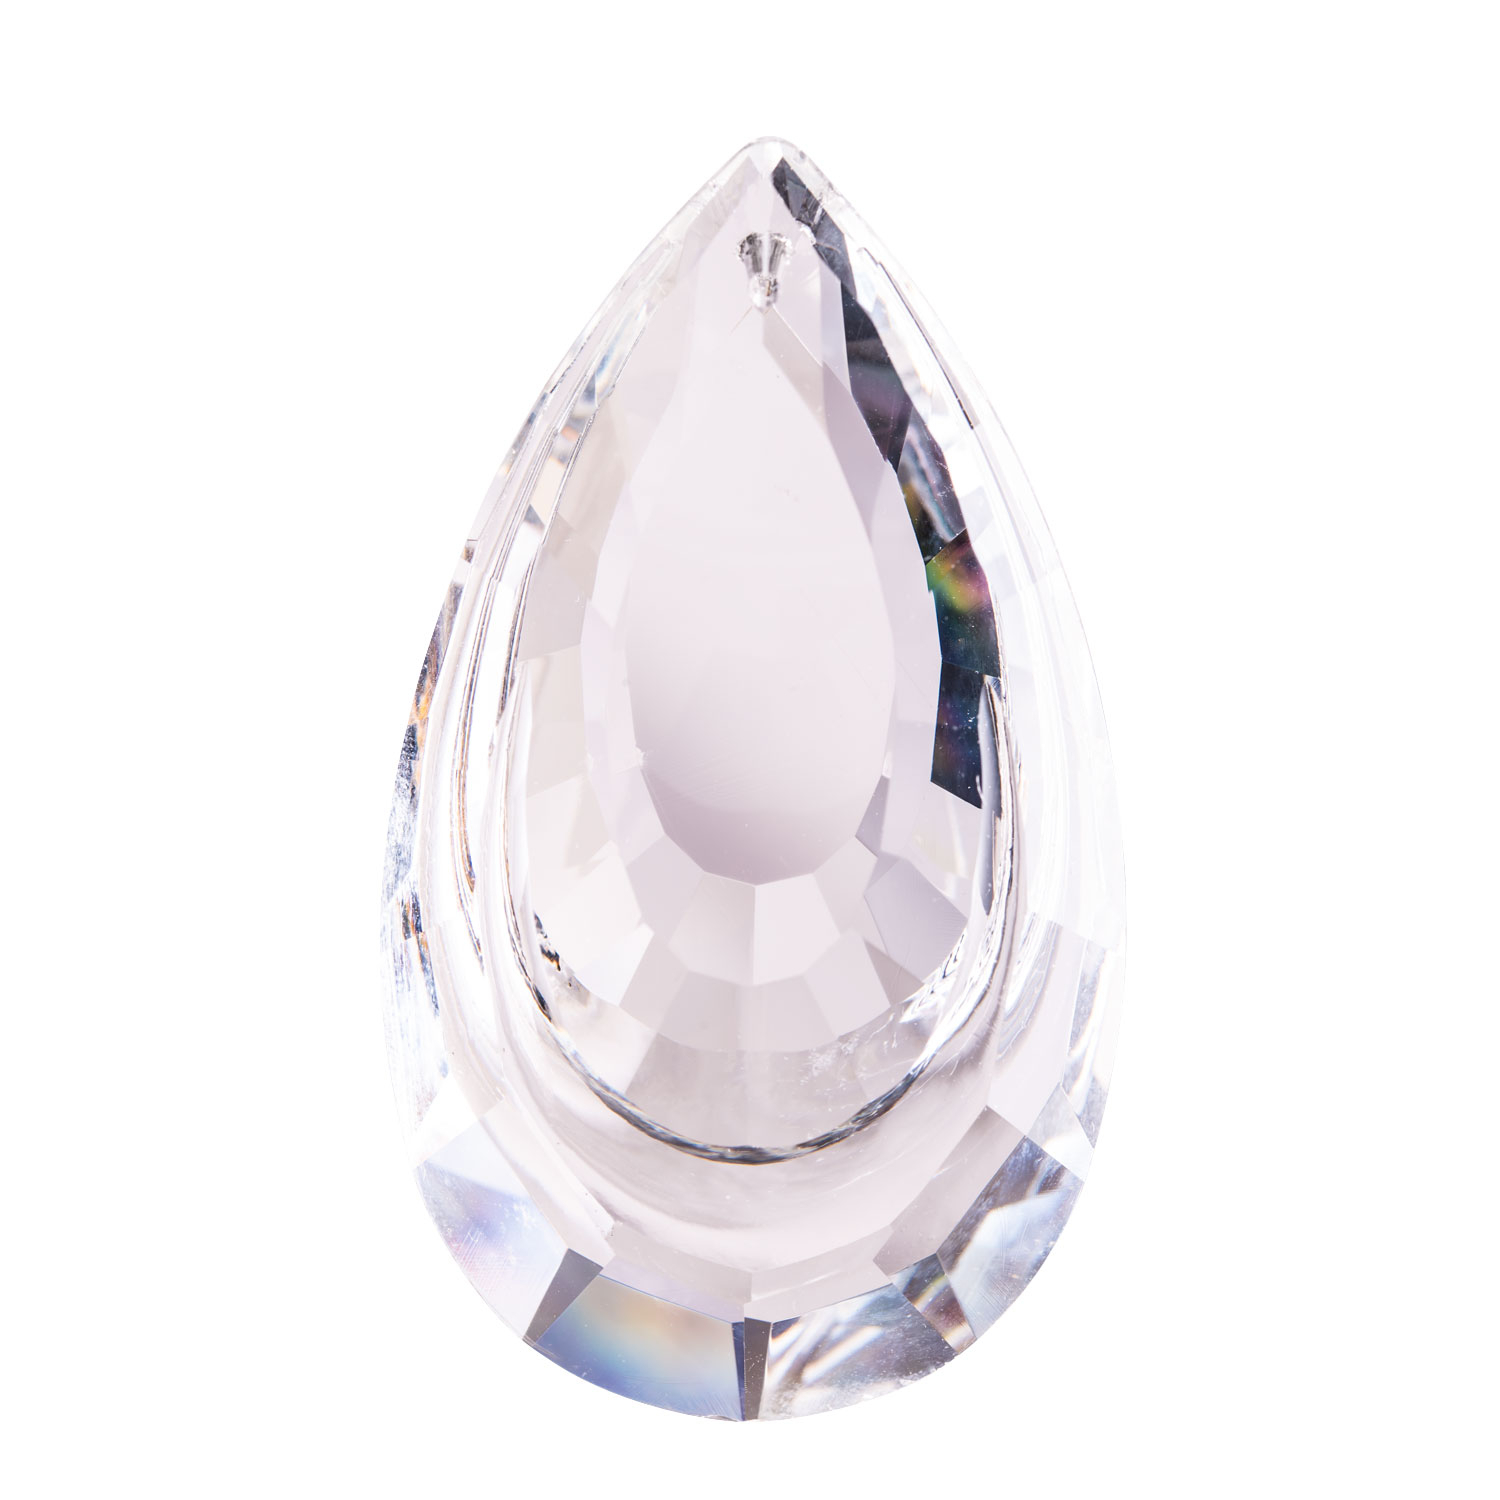 Sonnenfänger-Kristall „Sternschnuppe“, Produktbild 1